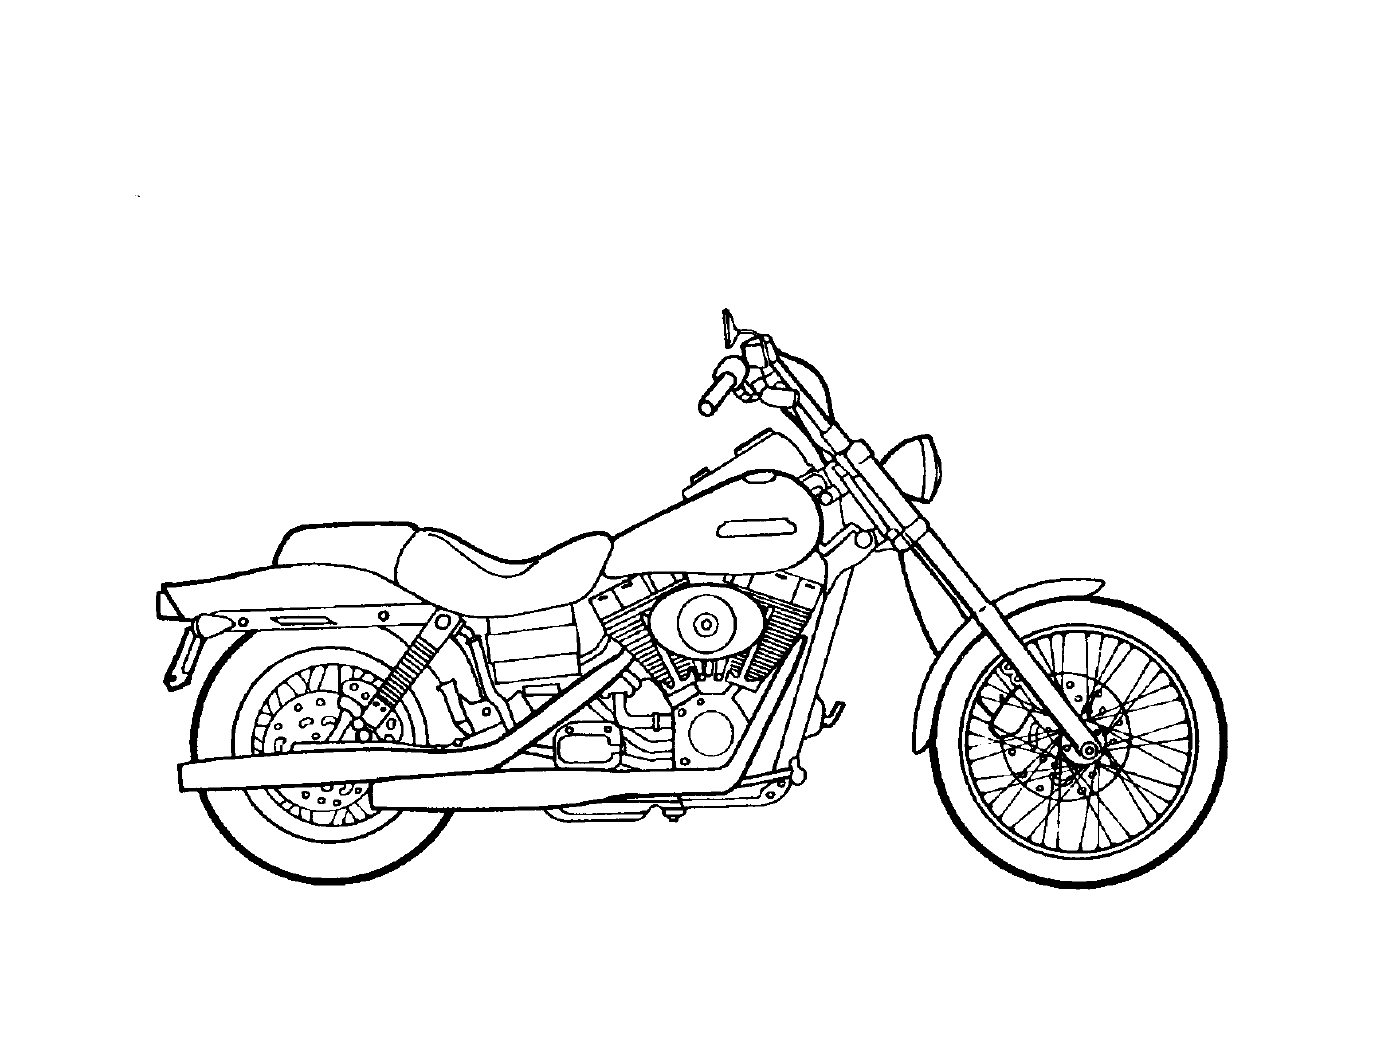   Motocyclette numéro 3 